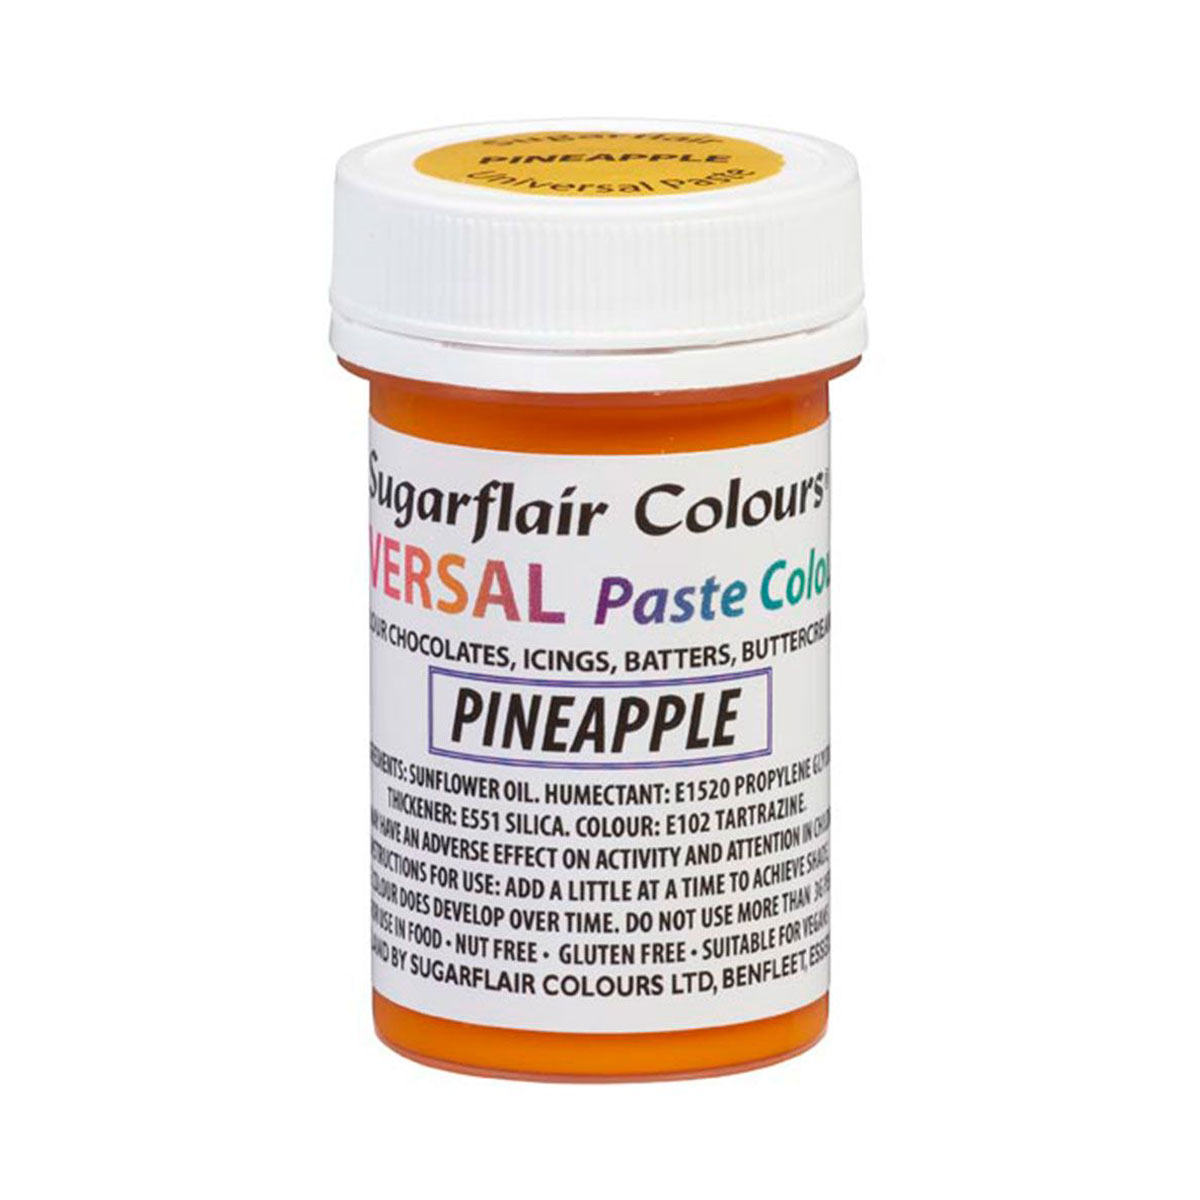 Sugarflair Universal-Pastenfarben - Pineapple - 22g